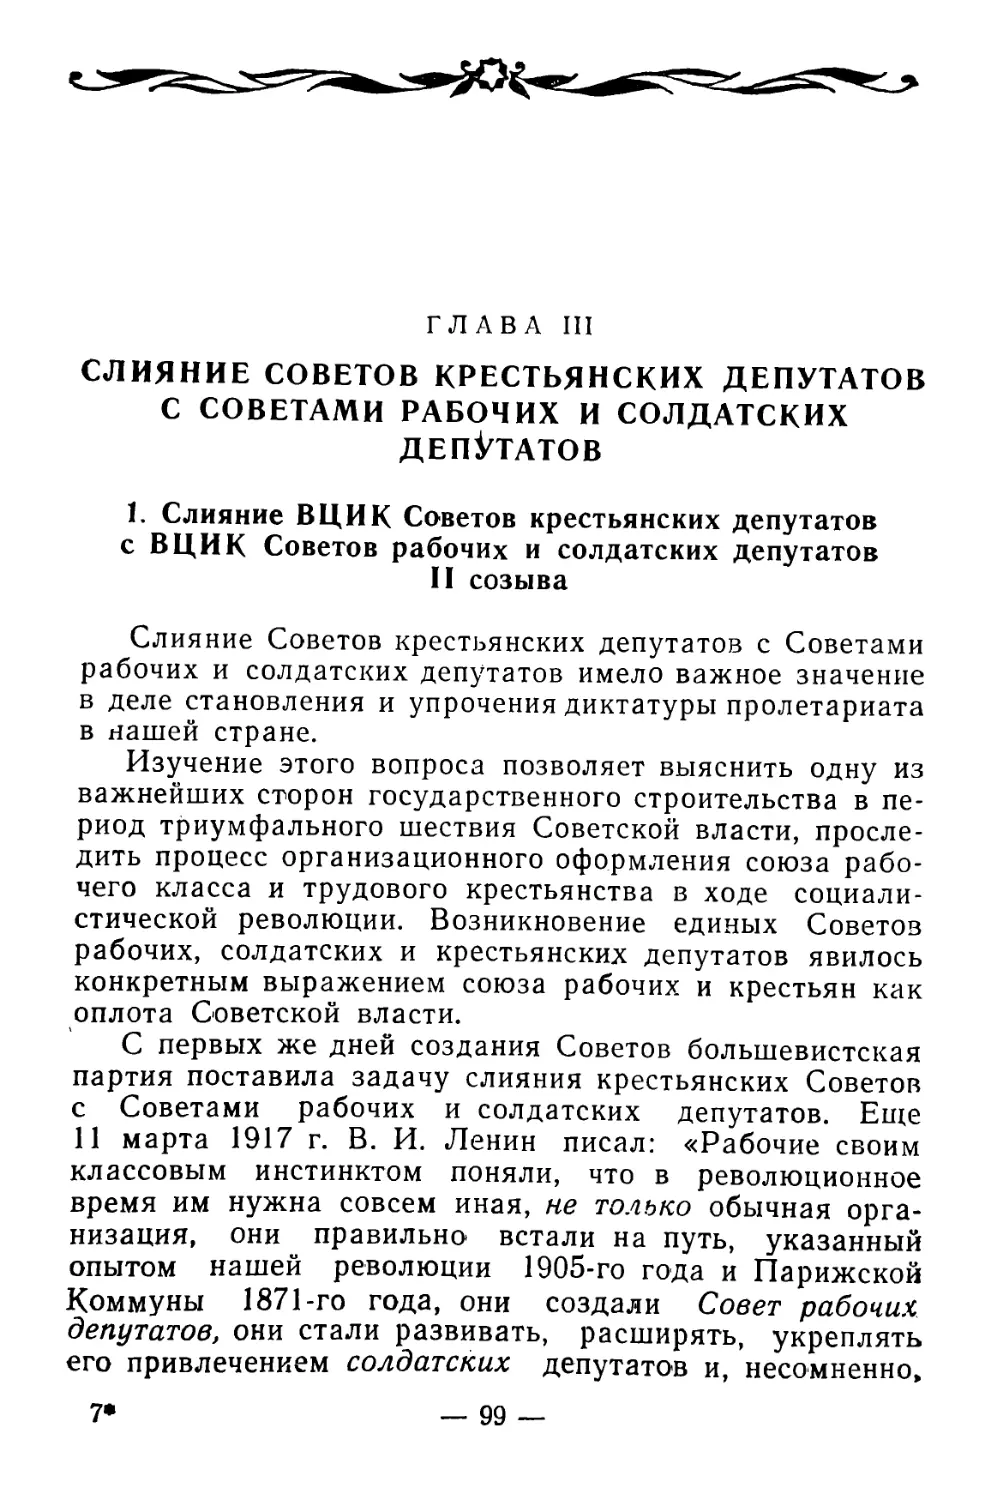 Глава III. Слияние Советов крестьянских депутатов с Советами рабочих и солдатских депутатов